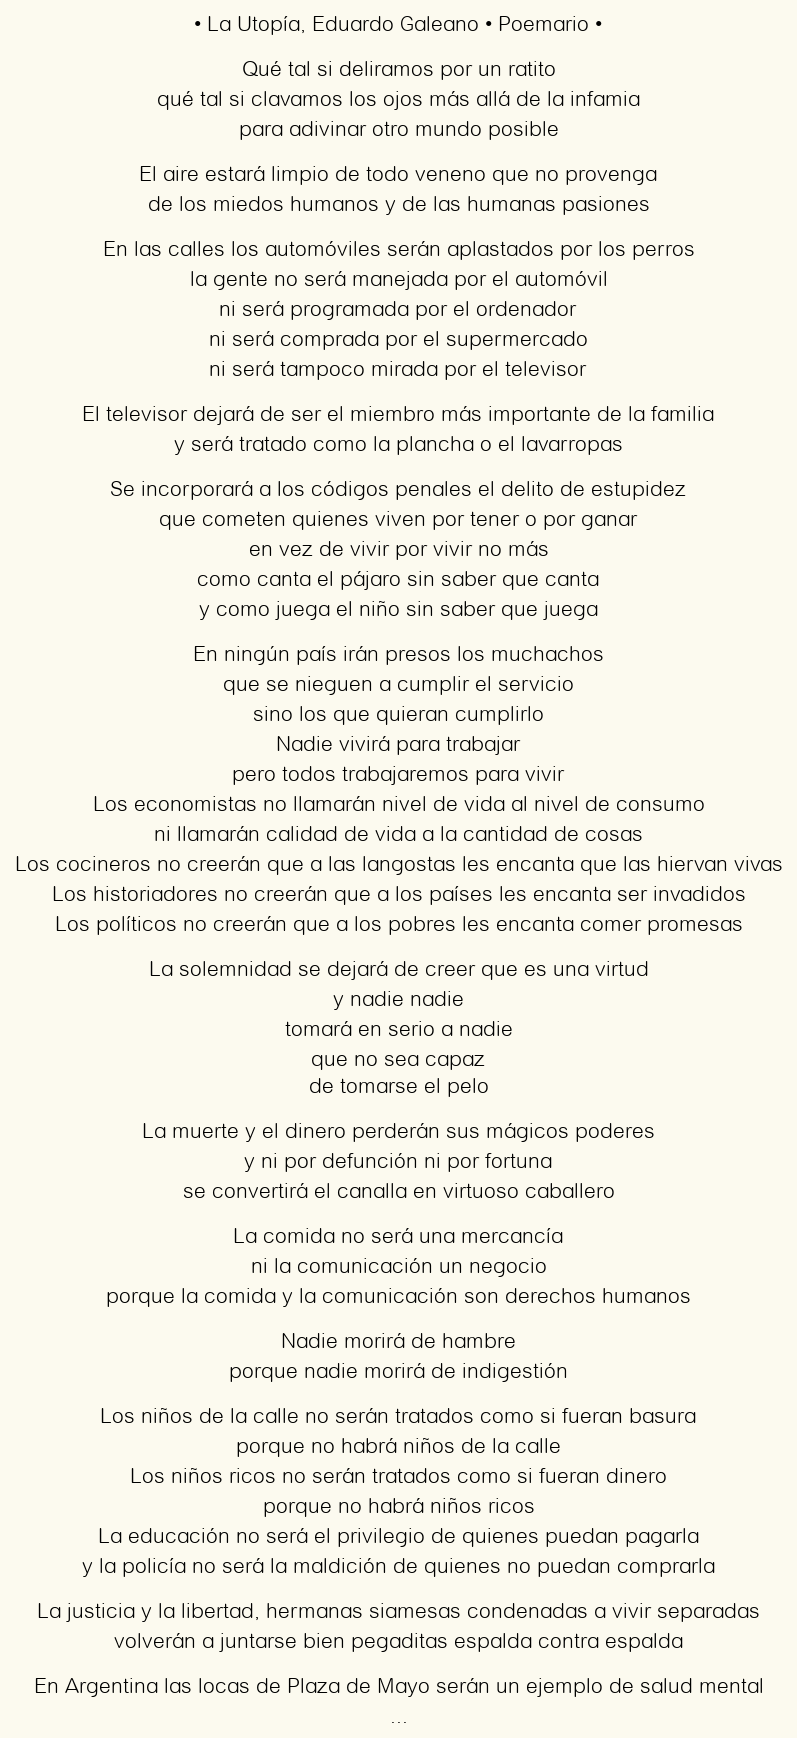 Imagen con el poema La Utopía, por Eduardo Galeano